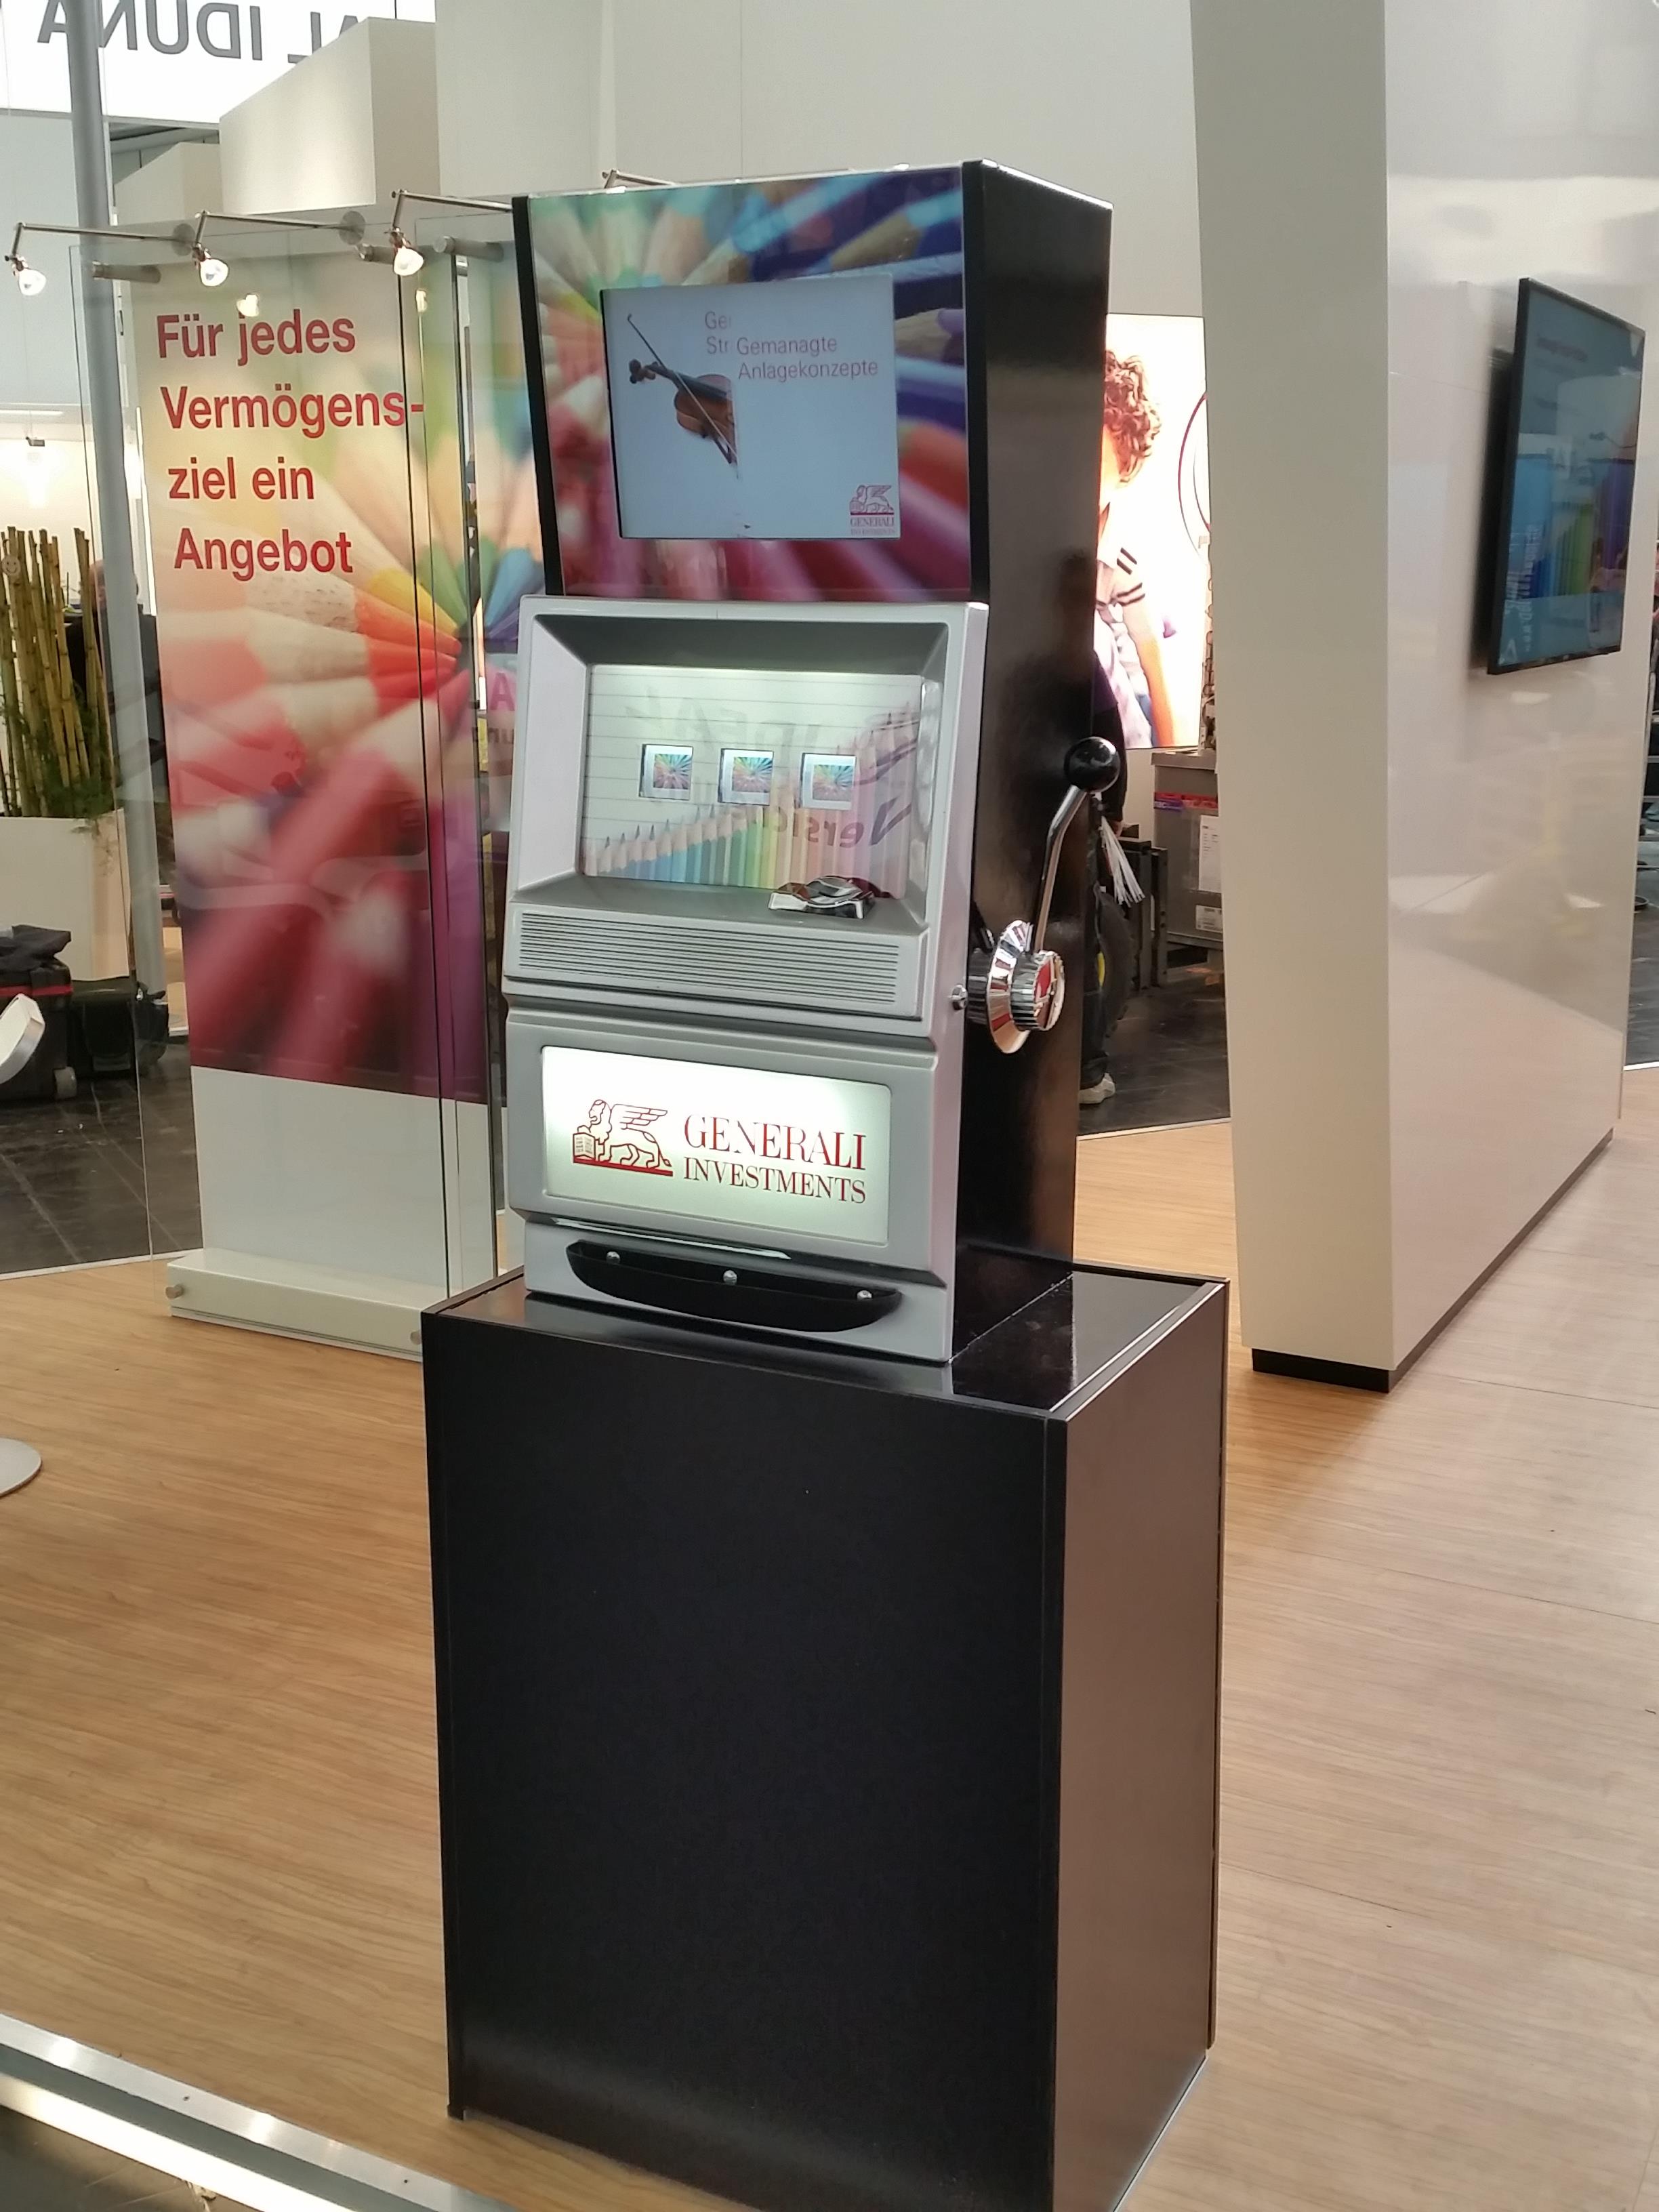 Einarmiger Bandit MAXI LCD mit Kundenbranding für Generali Investment auf der DKM in Dortmund zur Miete.